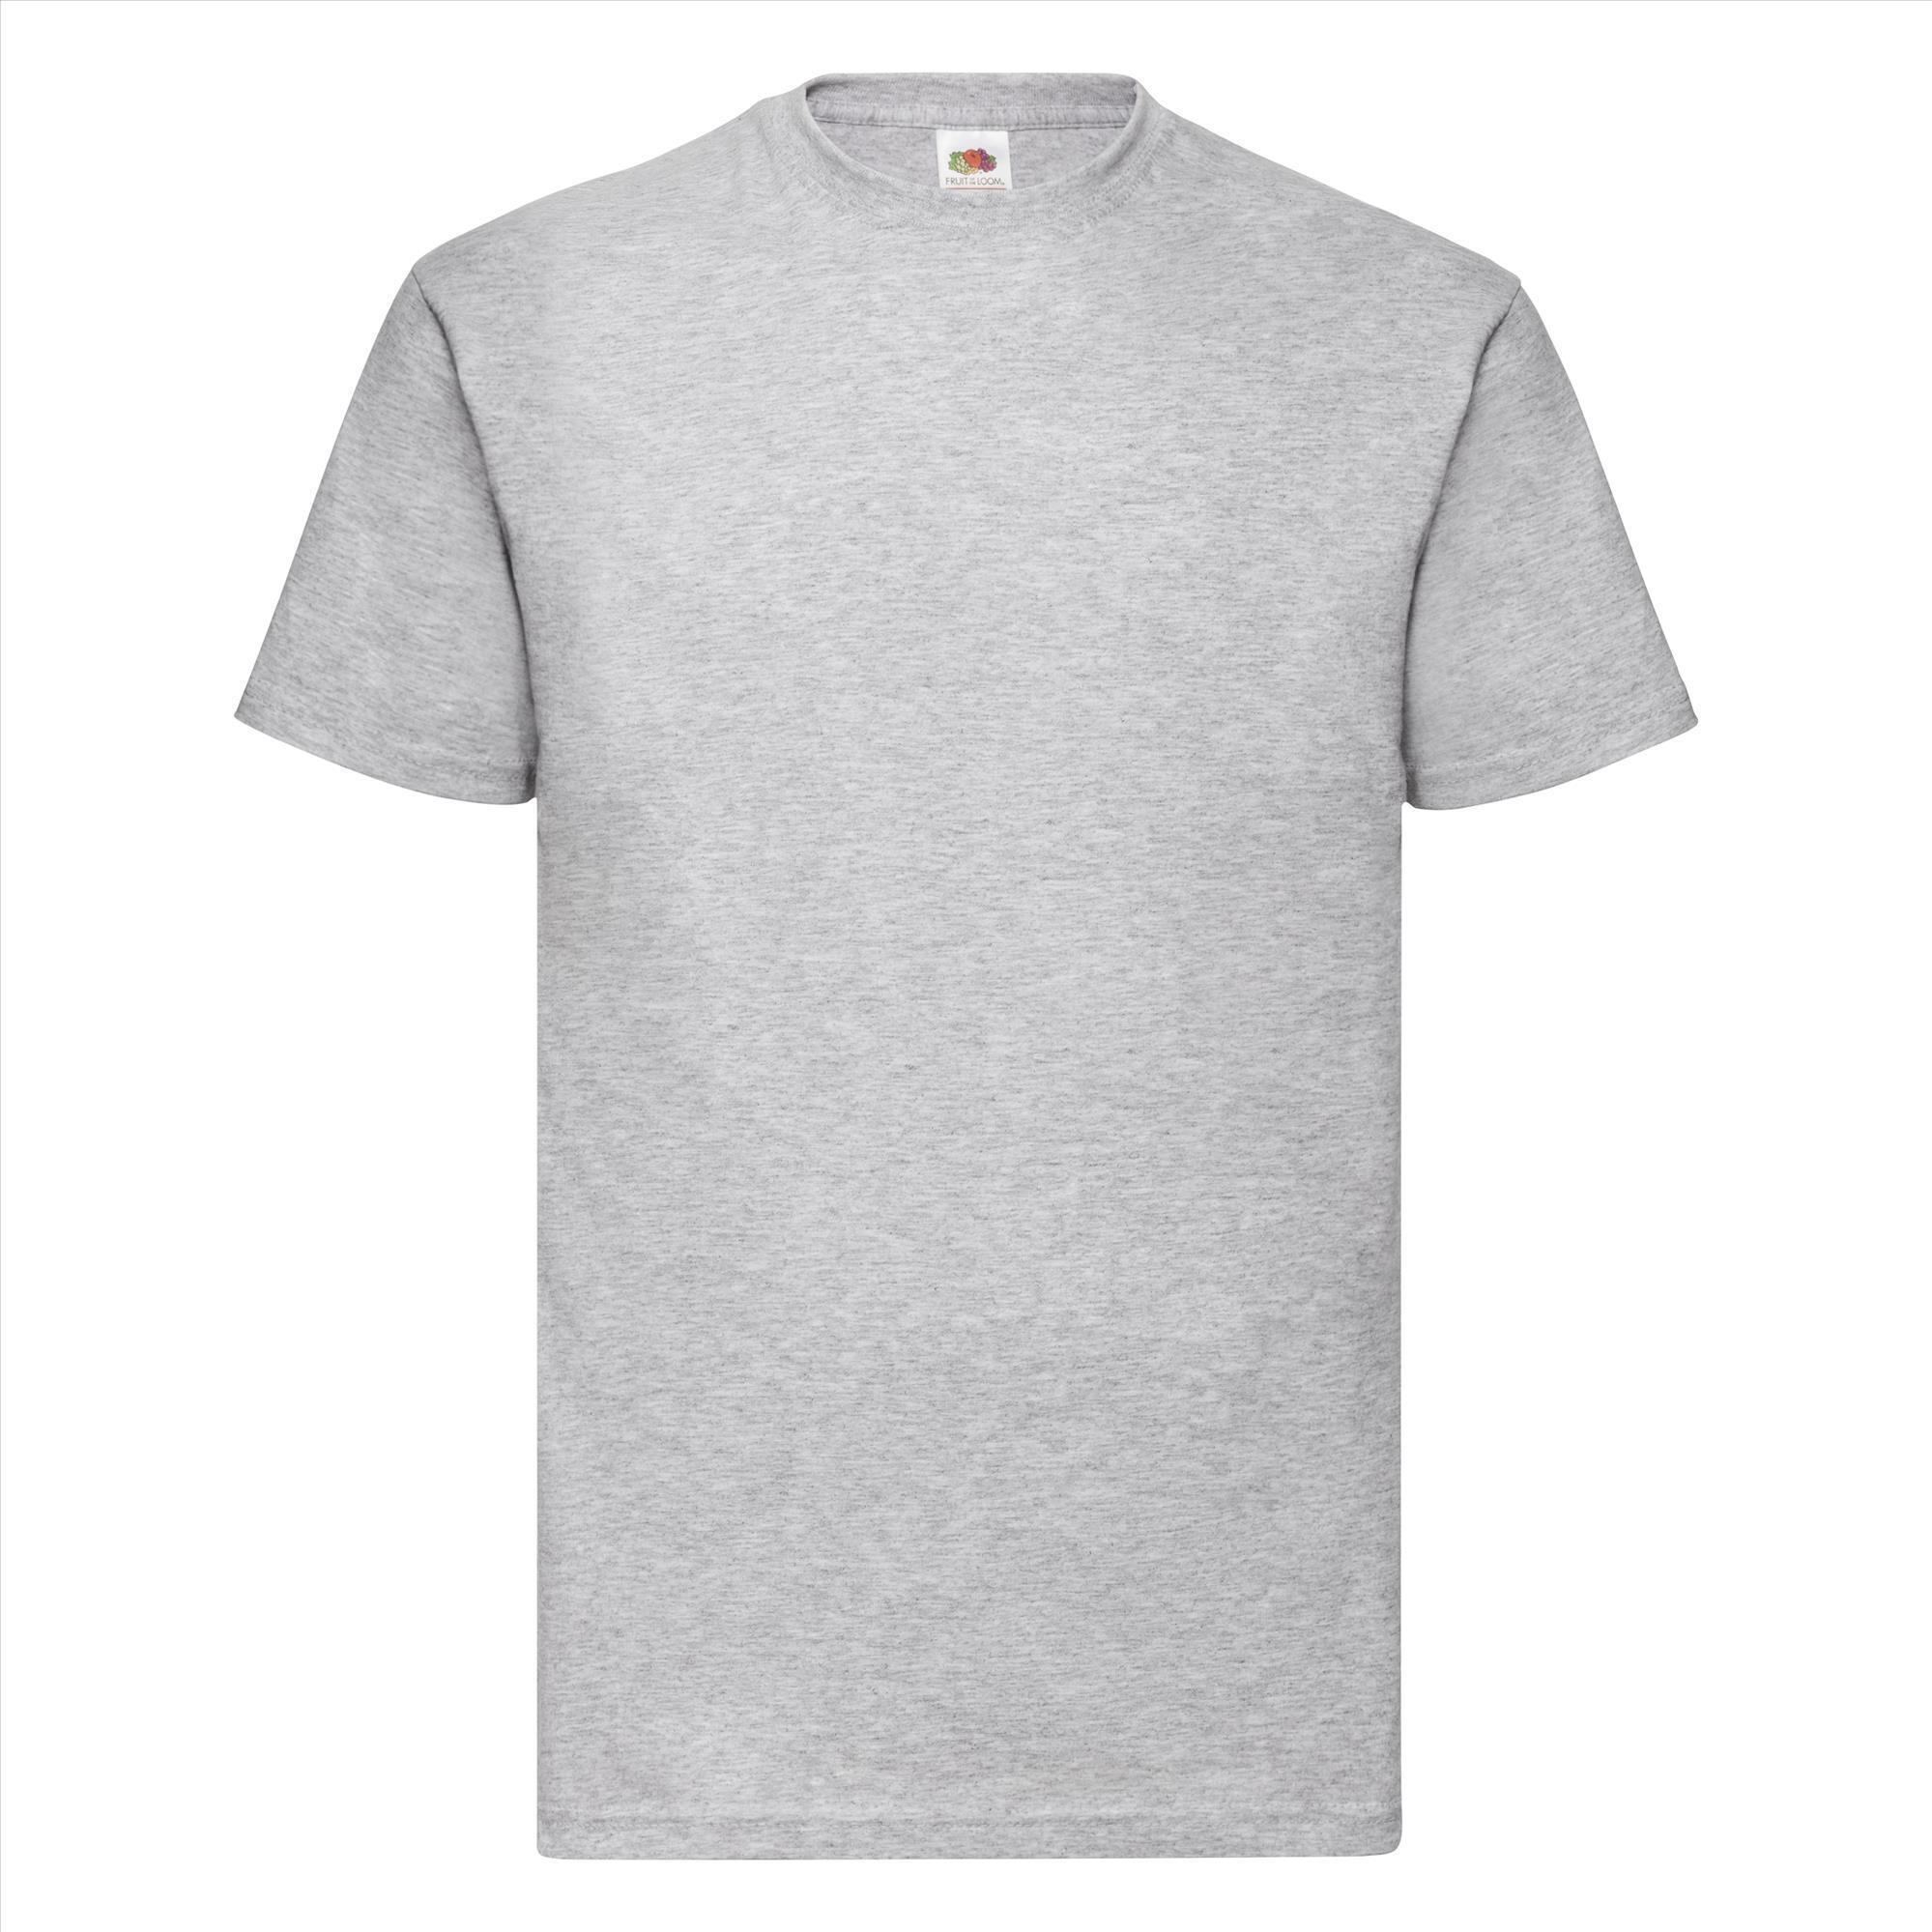 T-shirt voor mannen heide grijs personaliseren T-shirt bedrukken